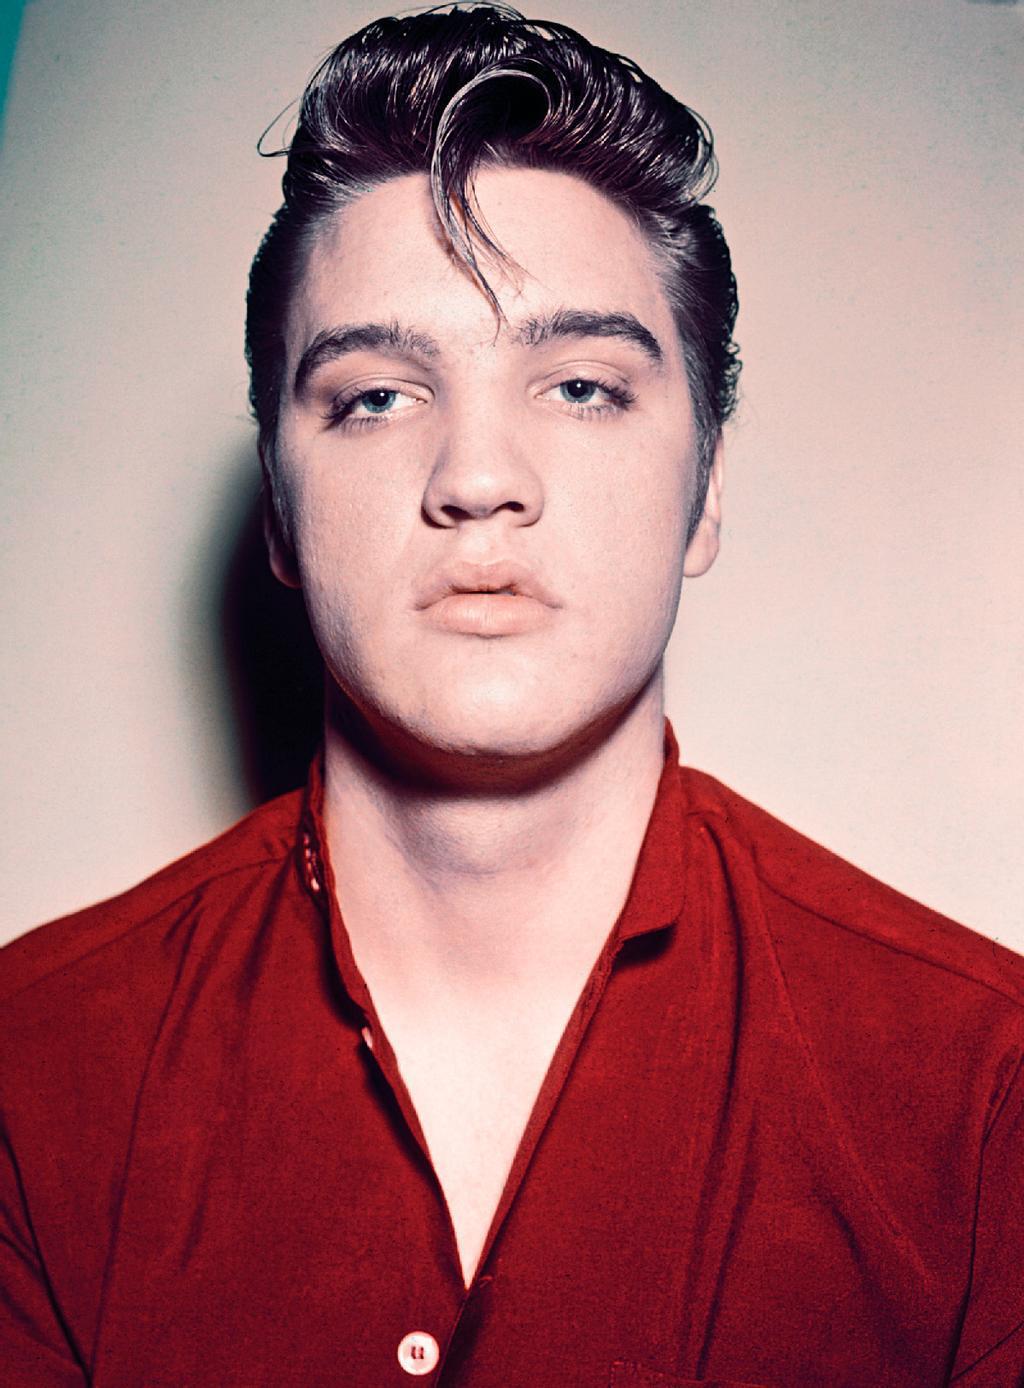 “Antes de Elvis no había moda”